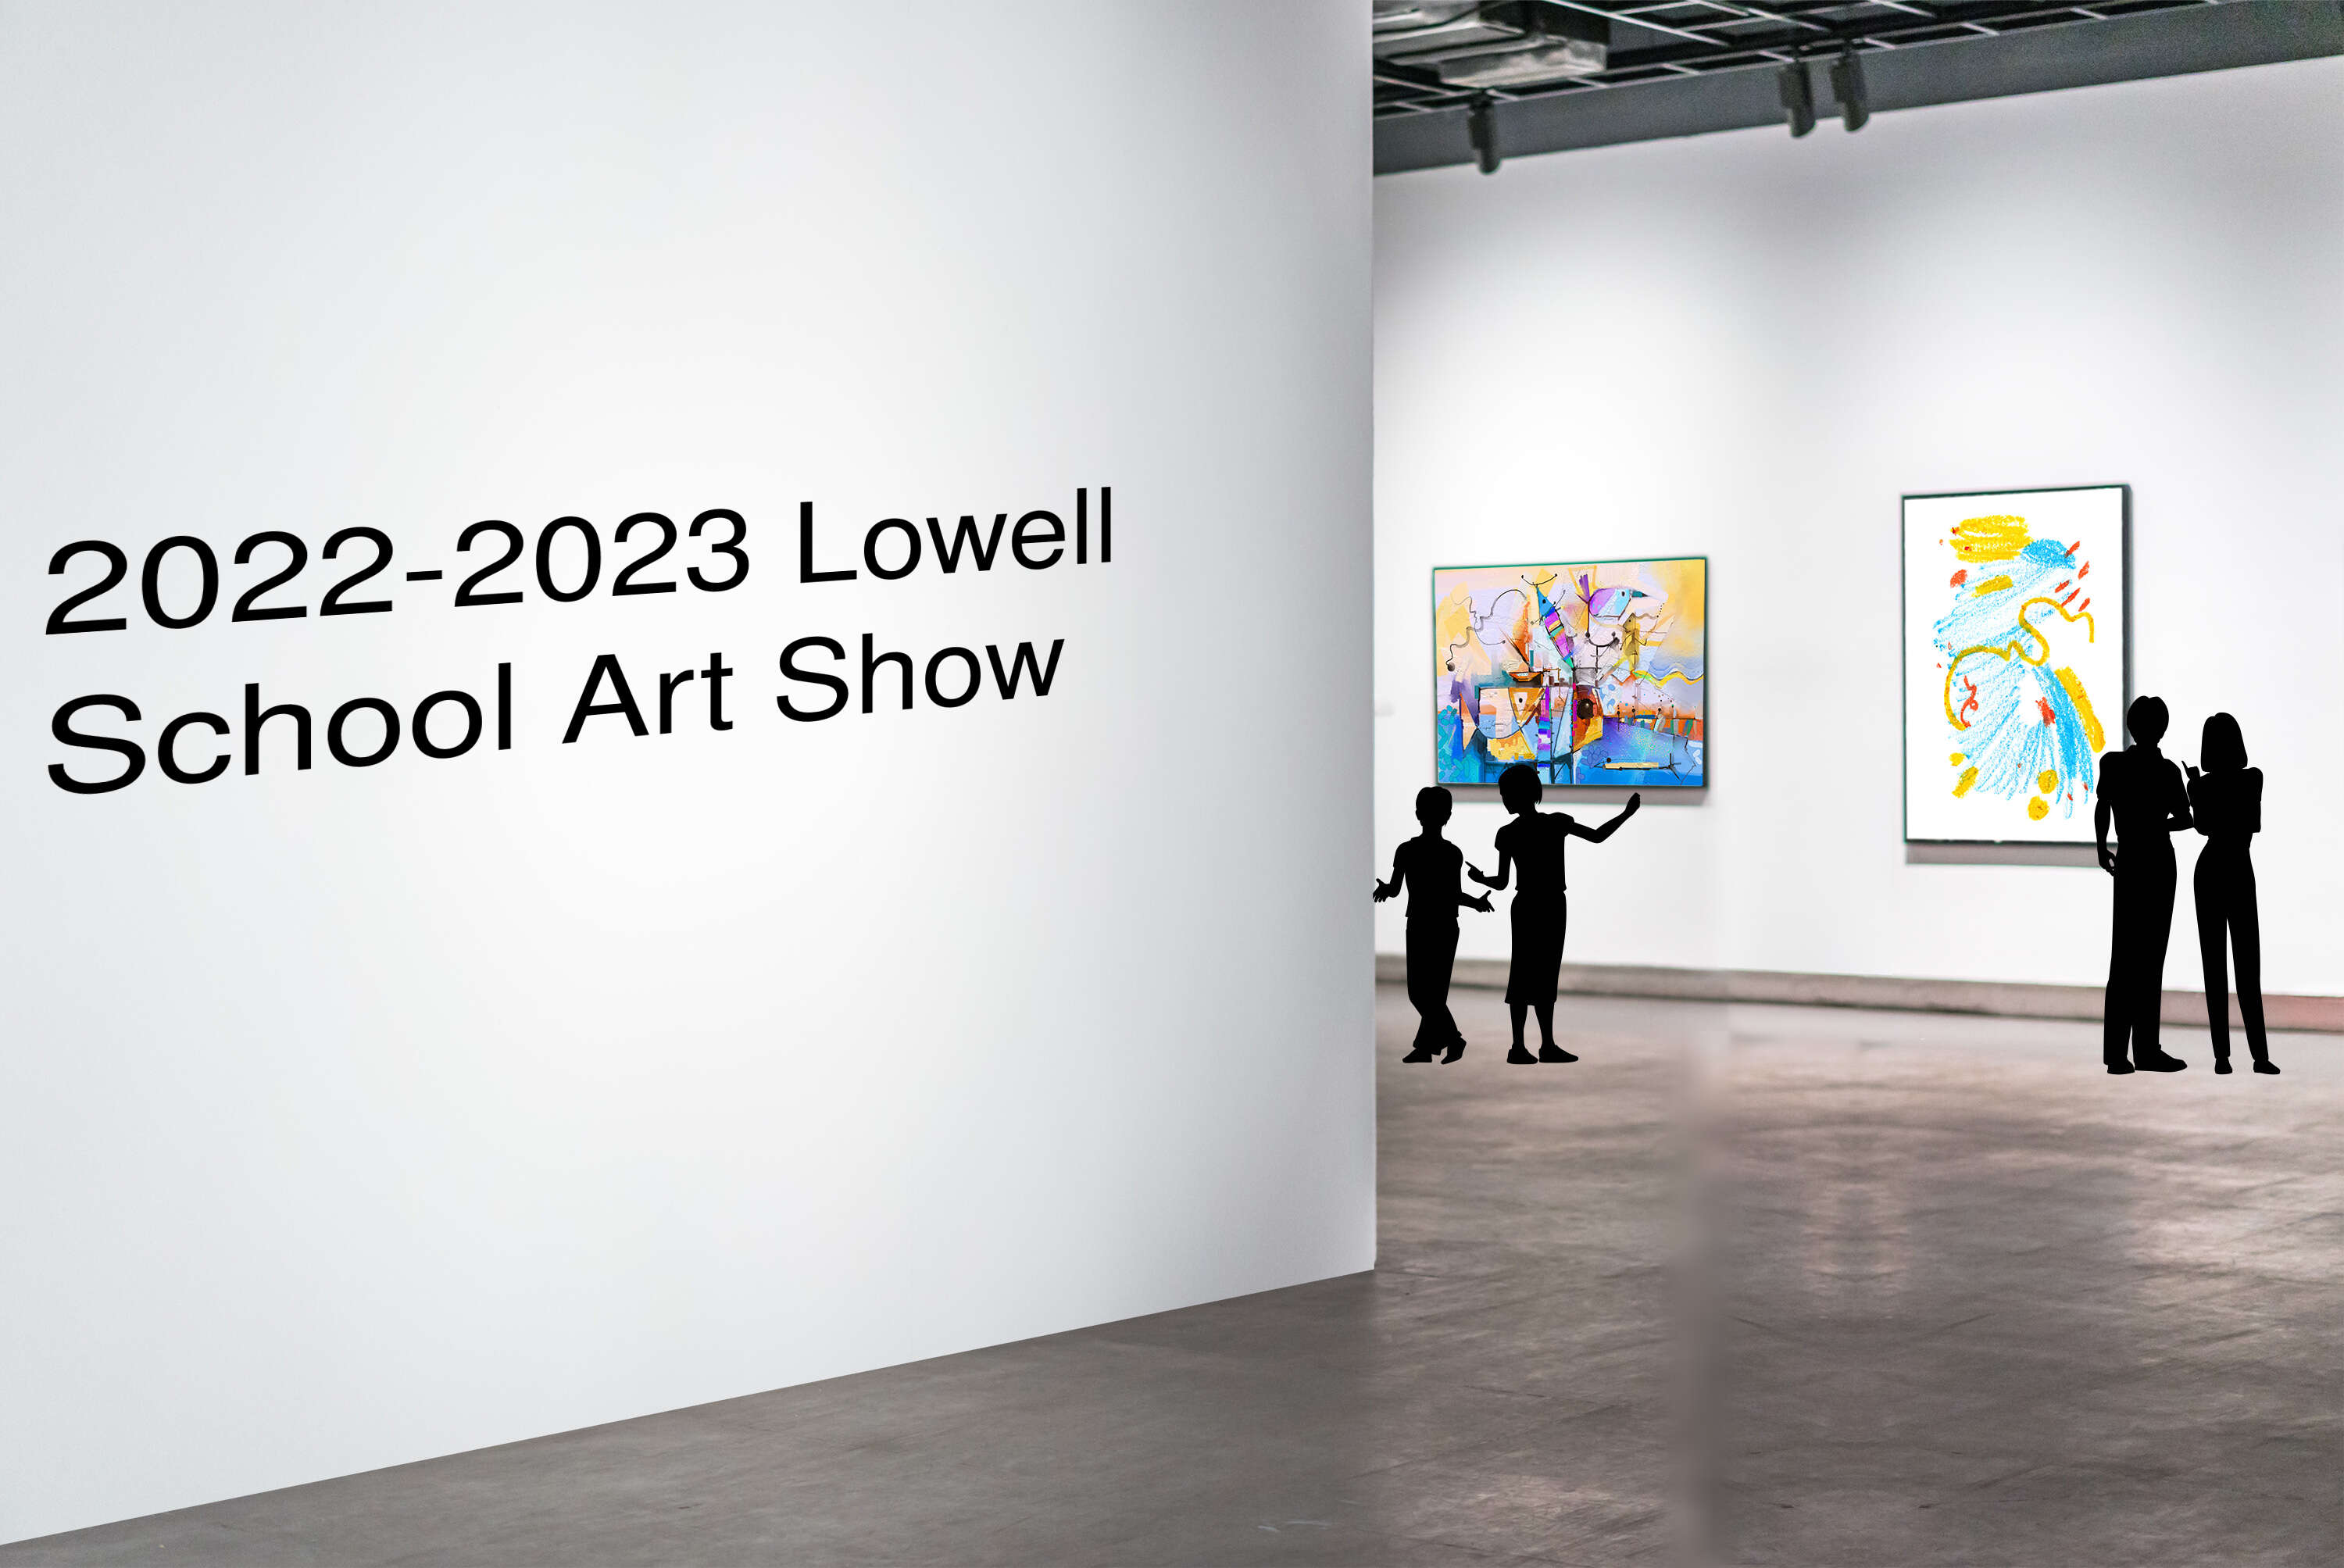 2022-2023 Lowell School Art Show